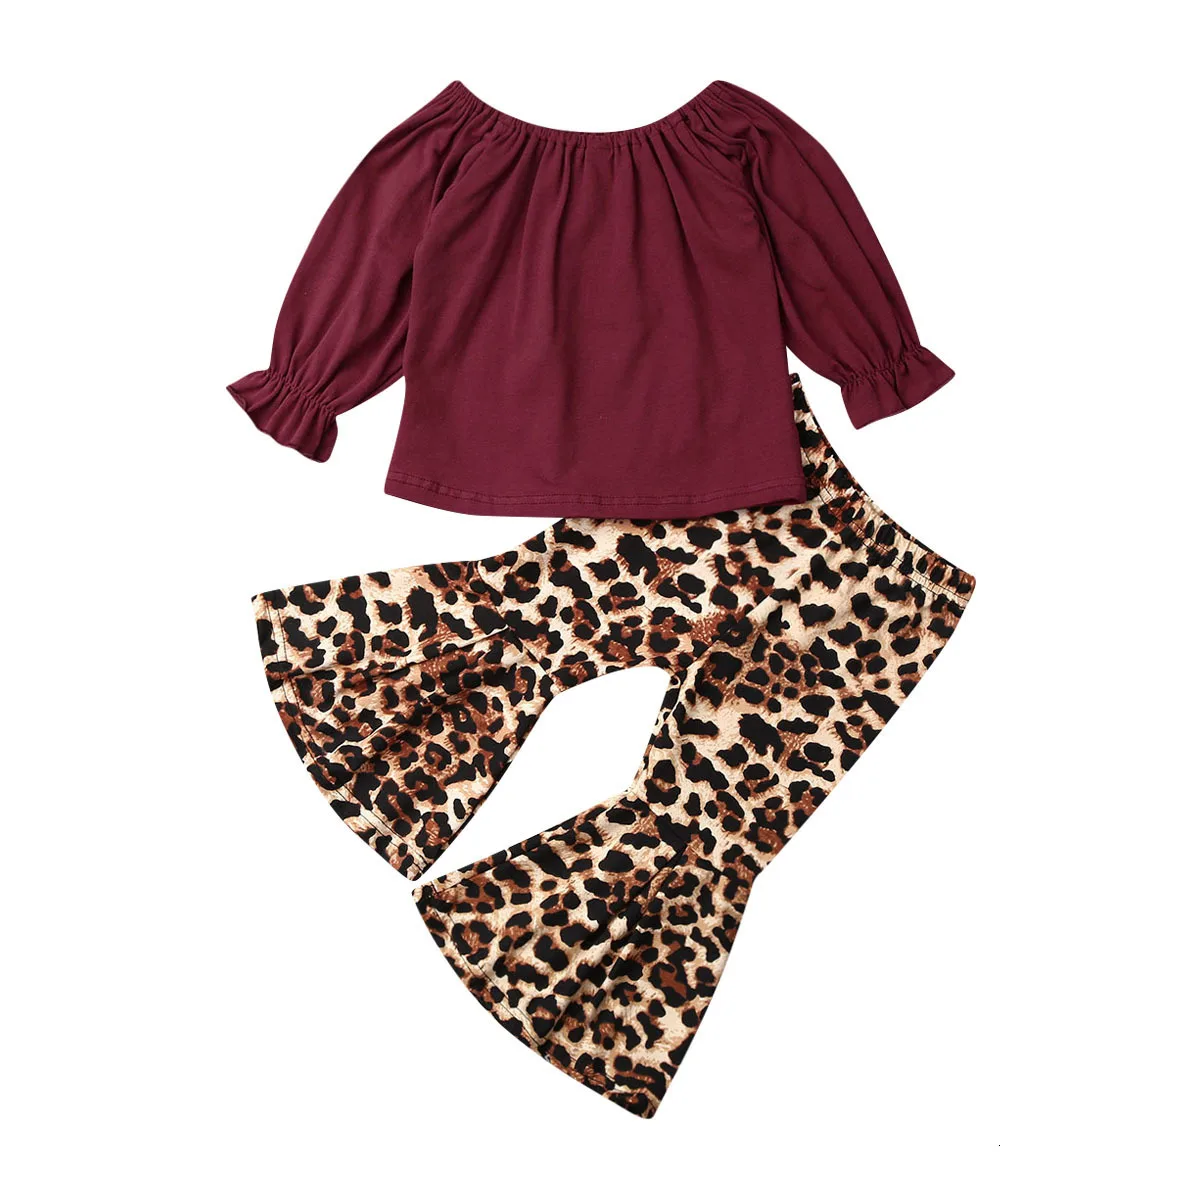 Осенняя одежда для маленьких девочек, топы с длинными рукавами, футболка, расклешенные штаны с леопардовым принтом